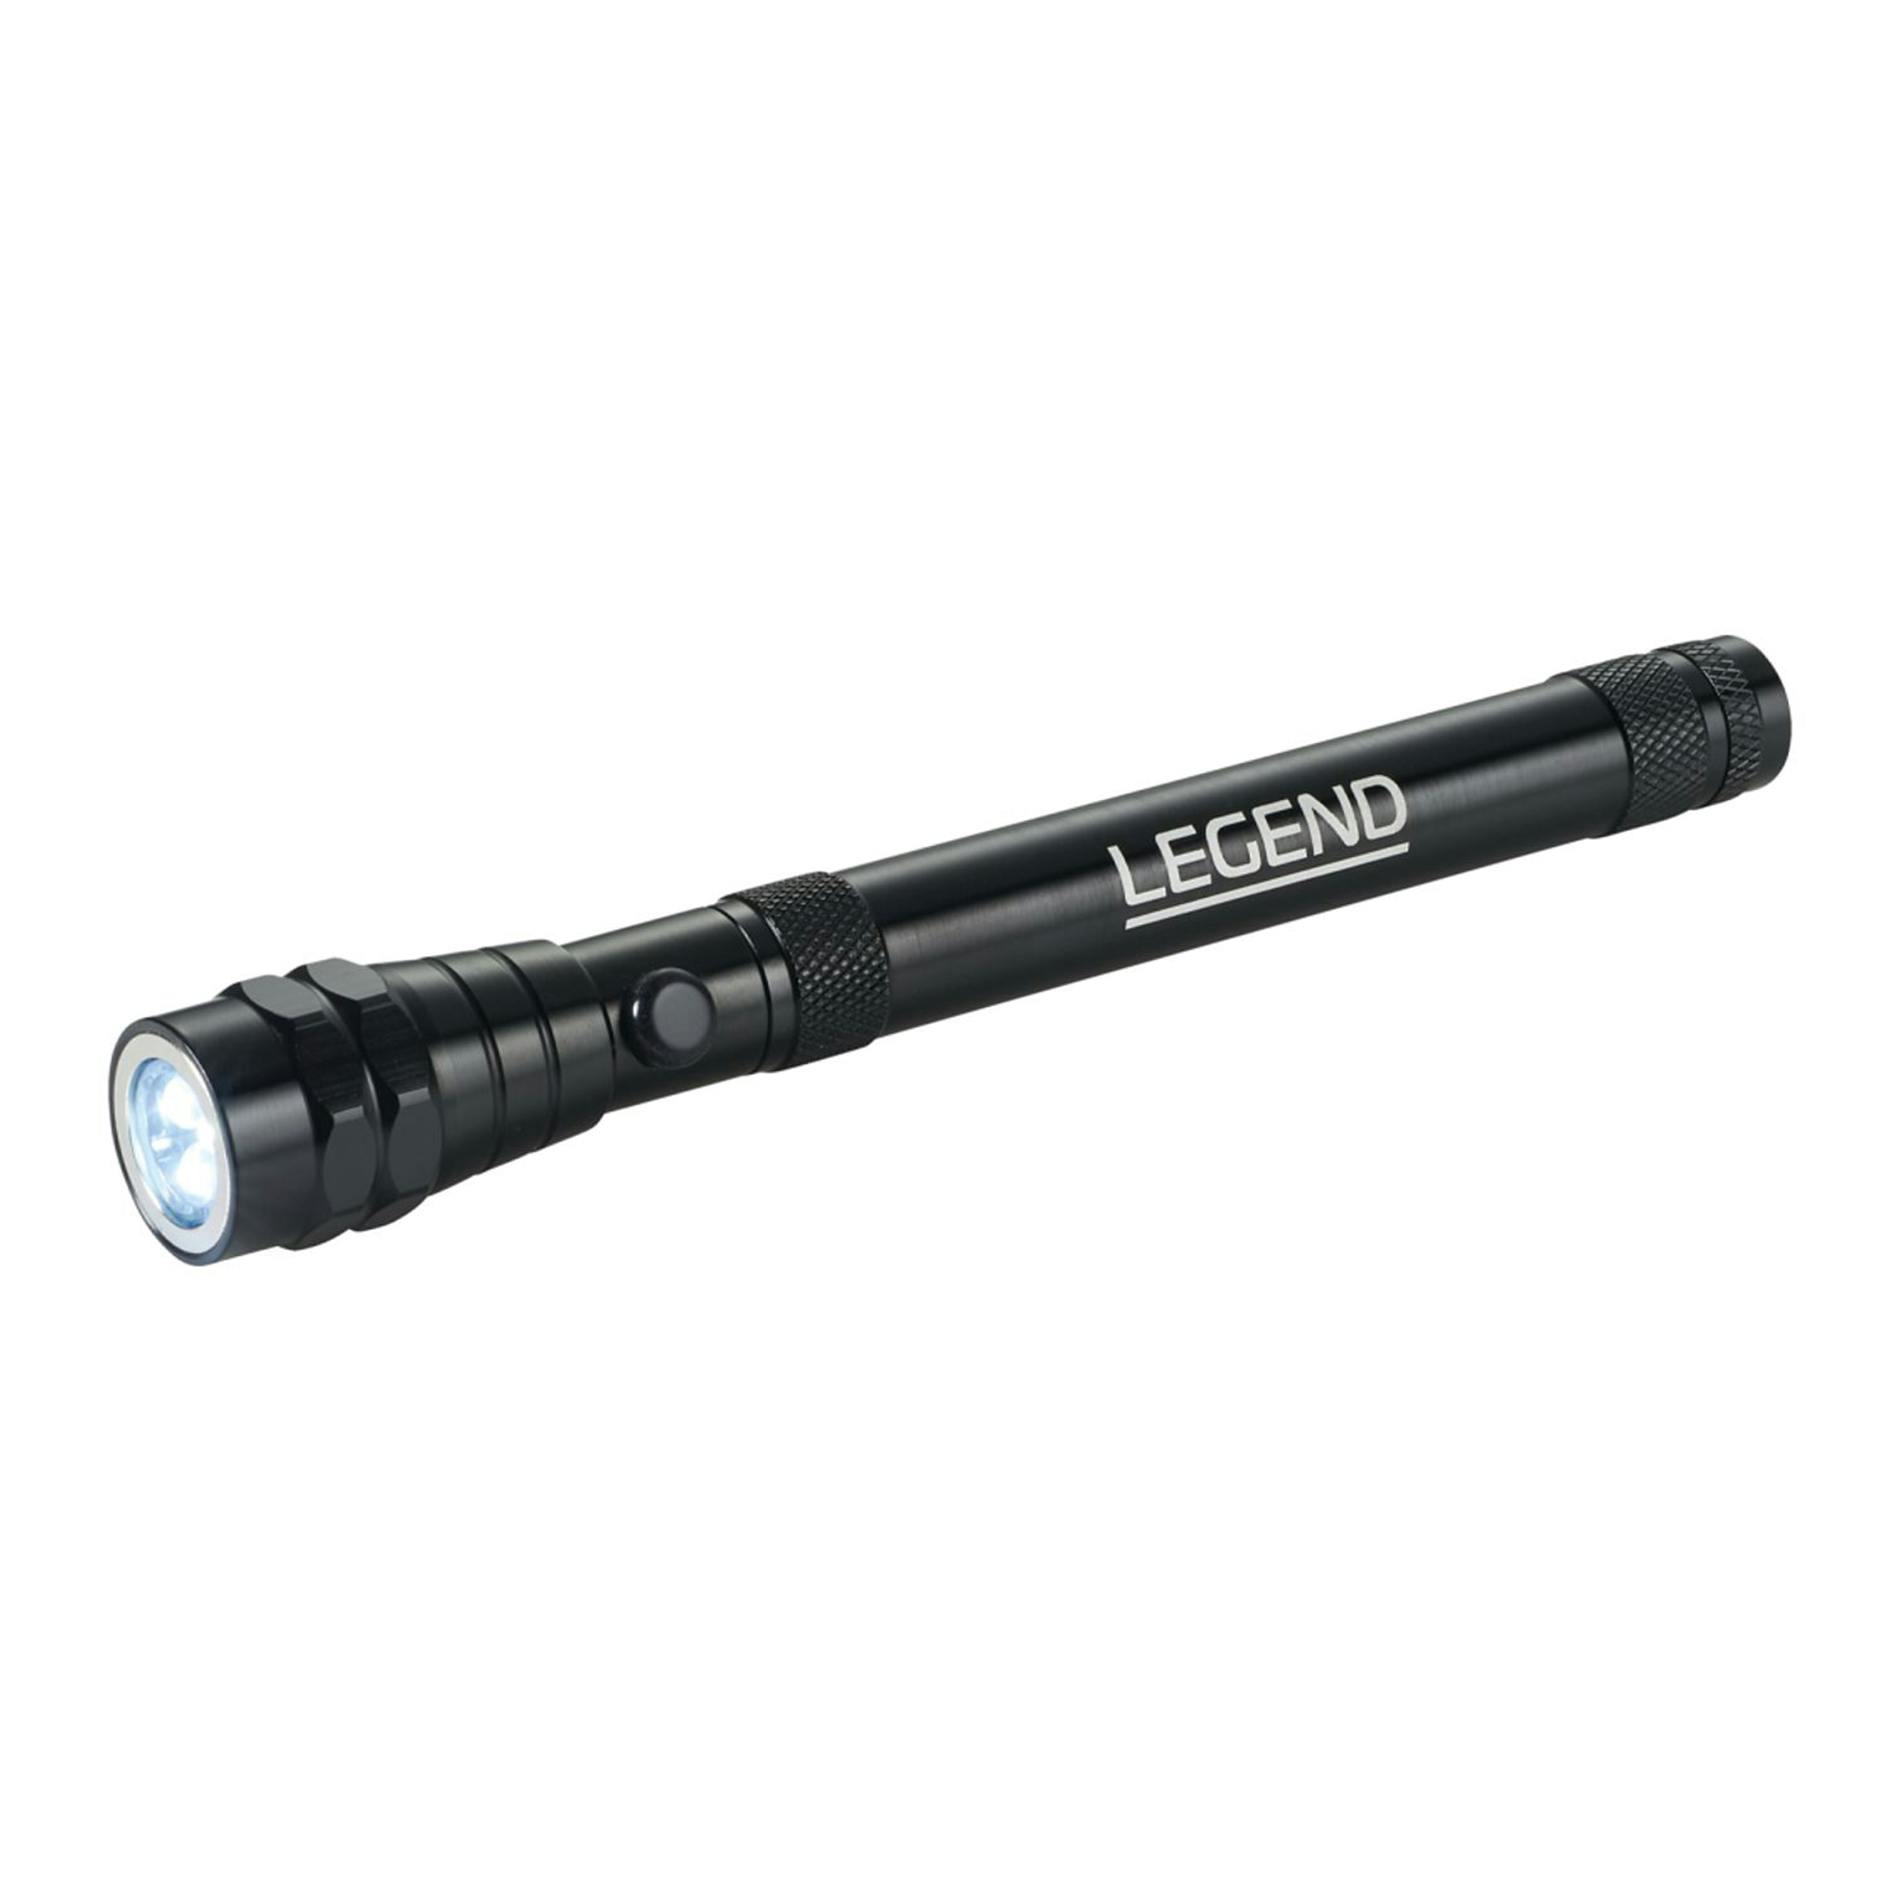 Flare Telescopic LED Magnetic Flashlight - additional Image 3